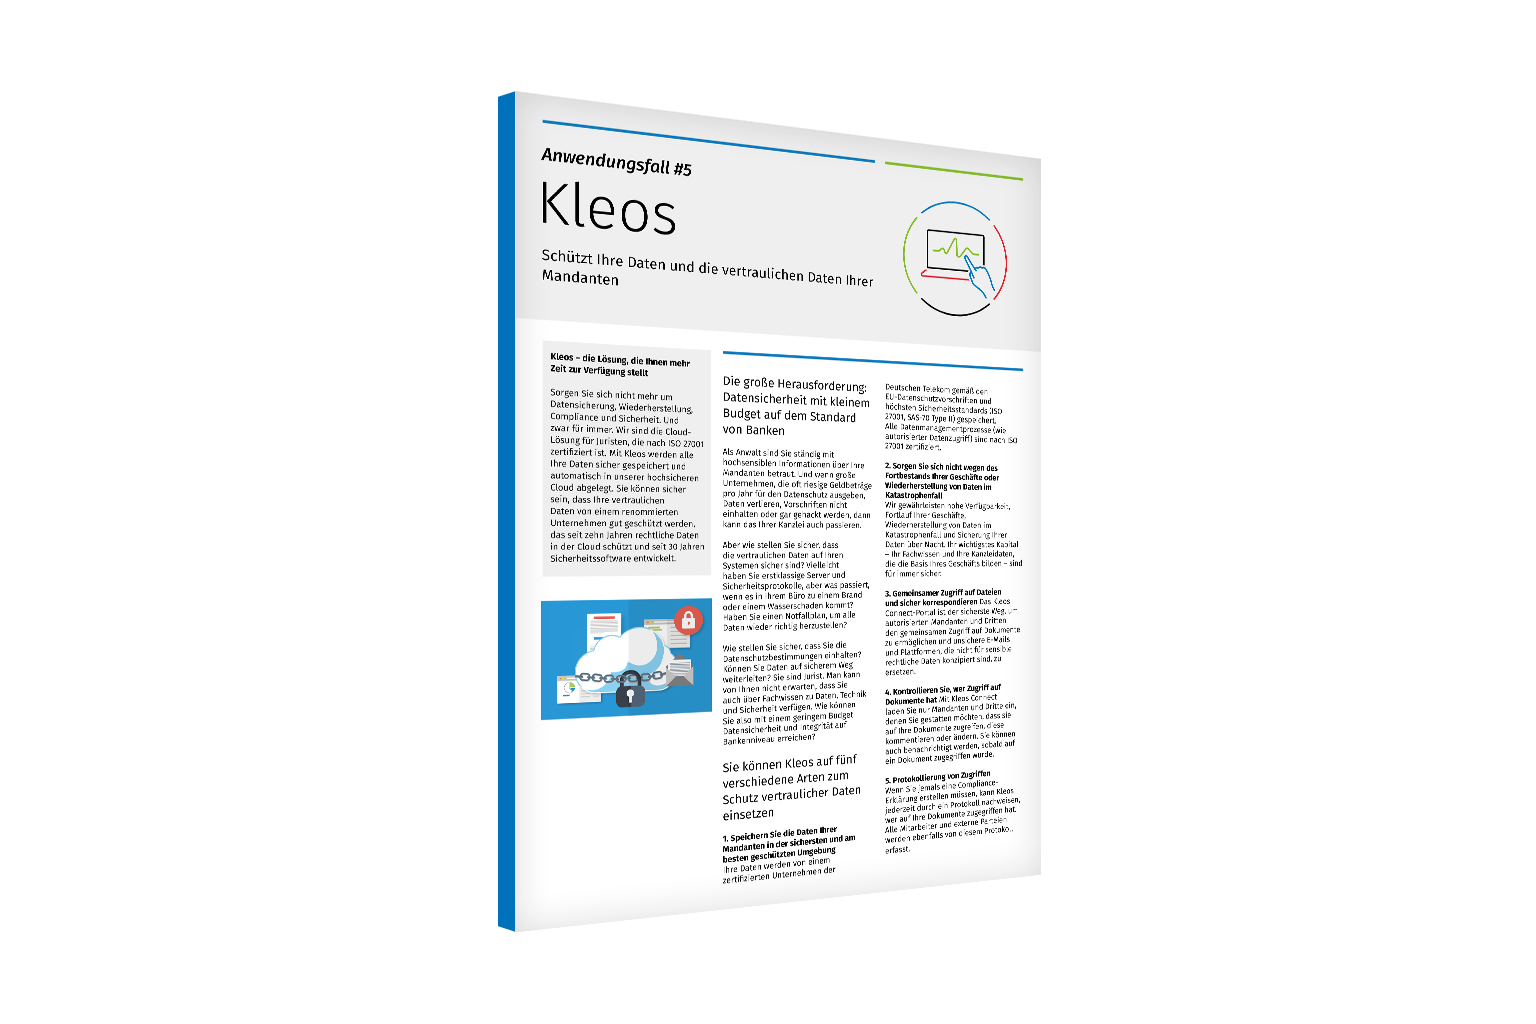 Kleos-Use-Case-5-Data-Protection-DE-1536x1024